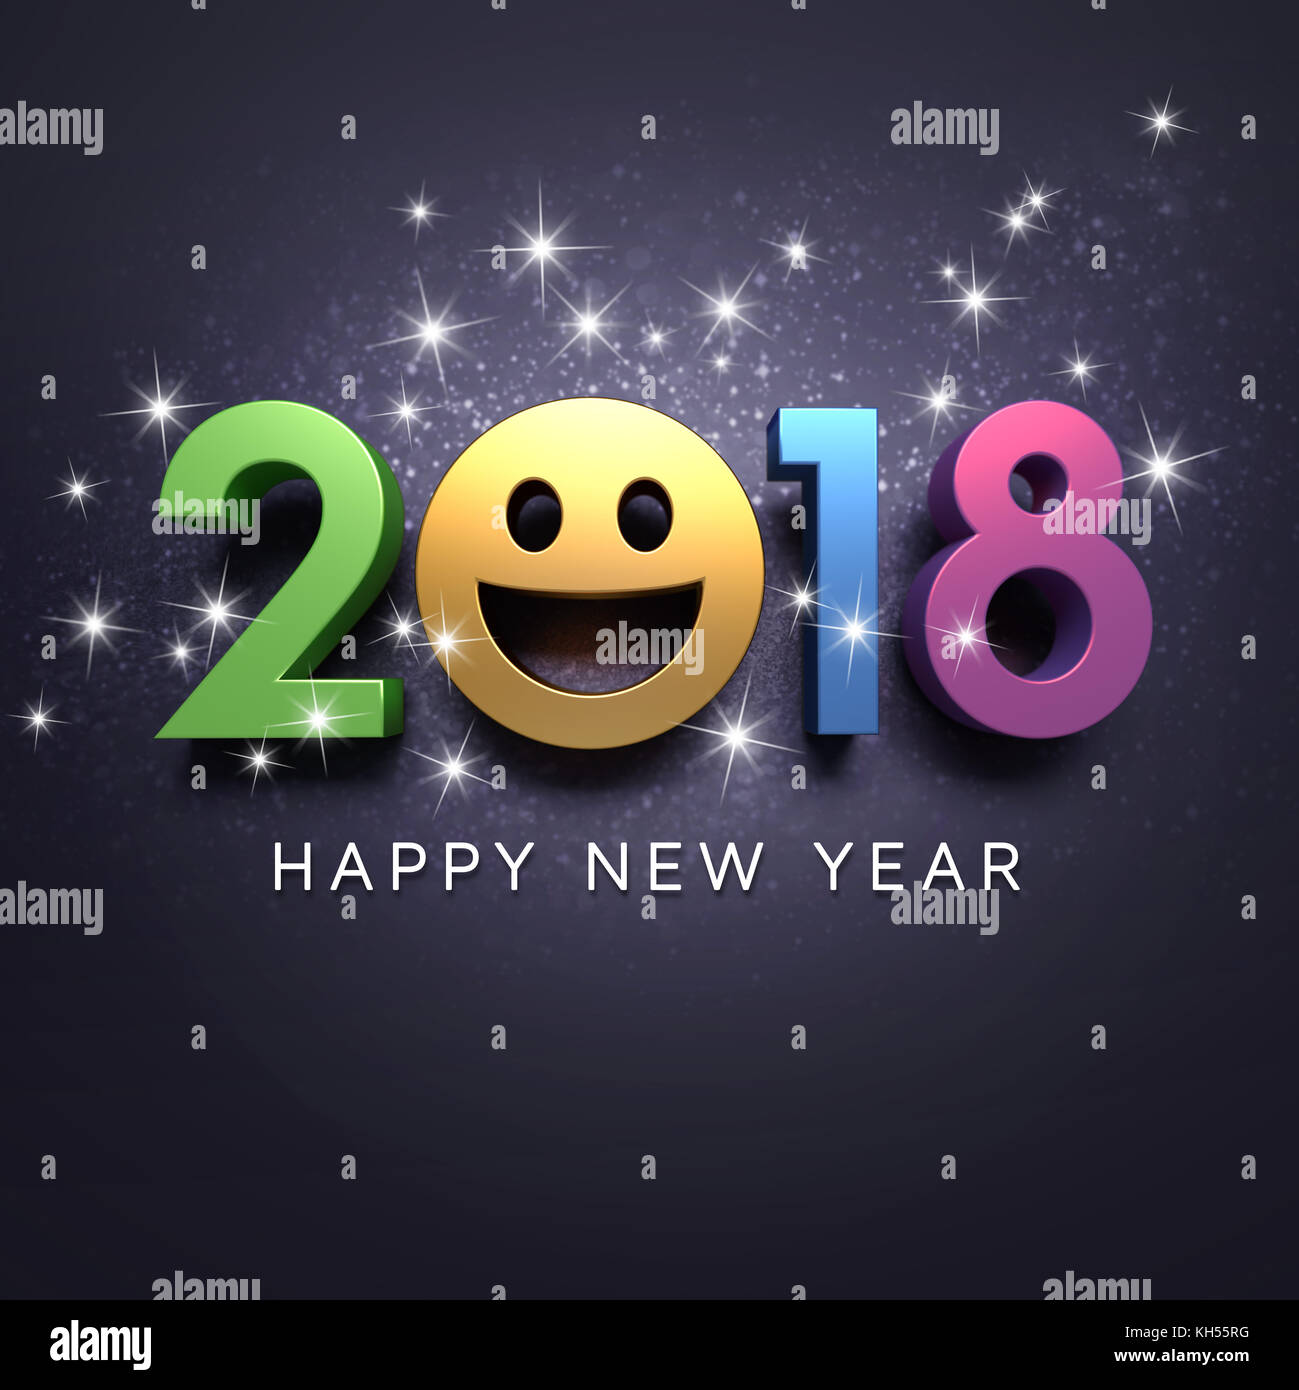 Felice anno nuovo 2018 data con una faccia sorridente e saluti, su una festosa sfondo nero - 3d illustrazione Foto Stock